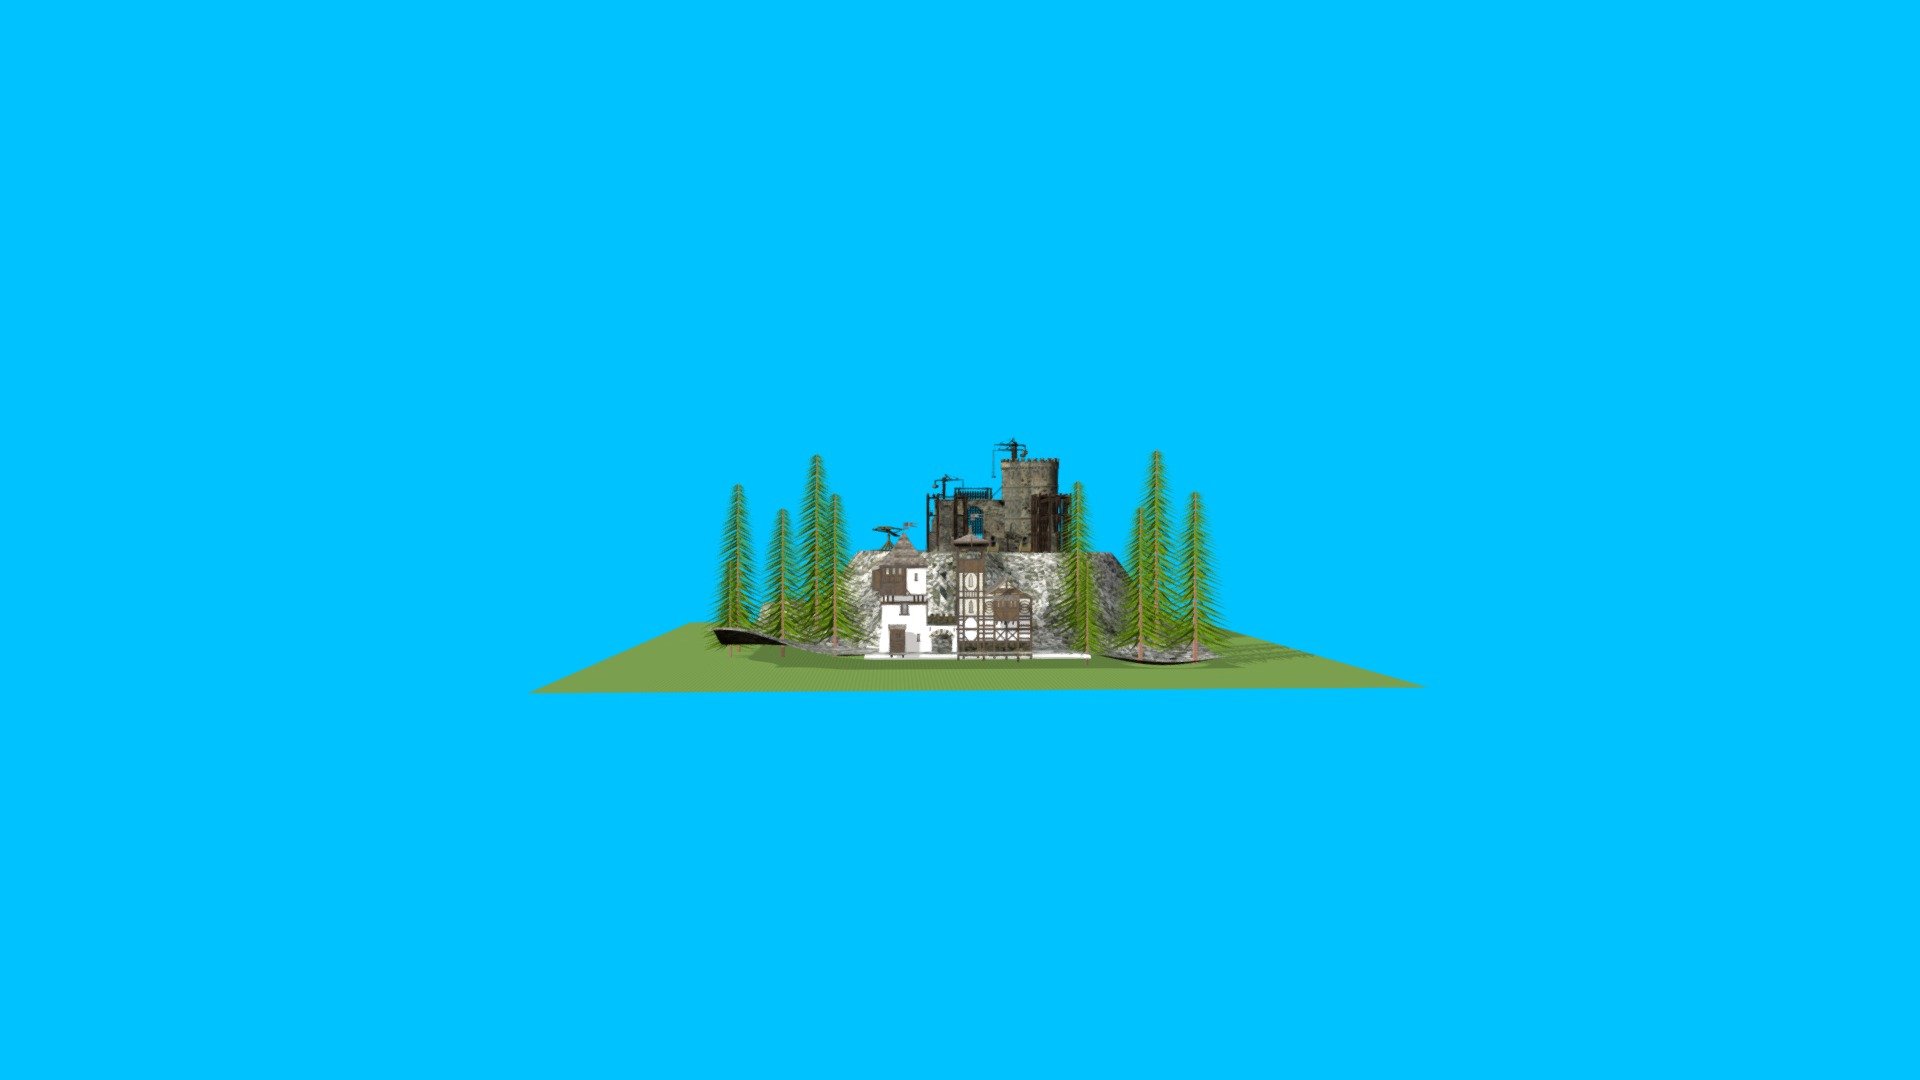 Medieval Castle Project Test for VR / MR